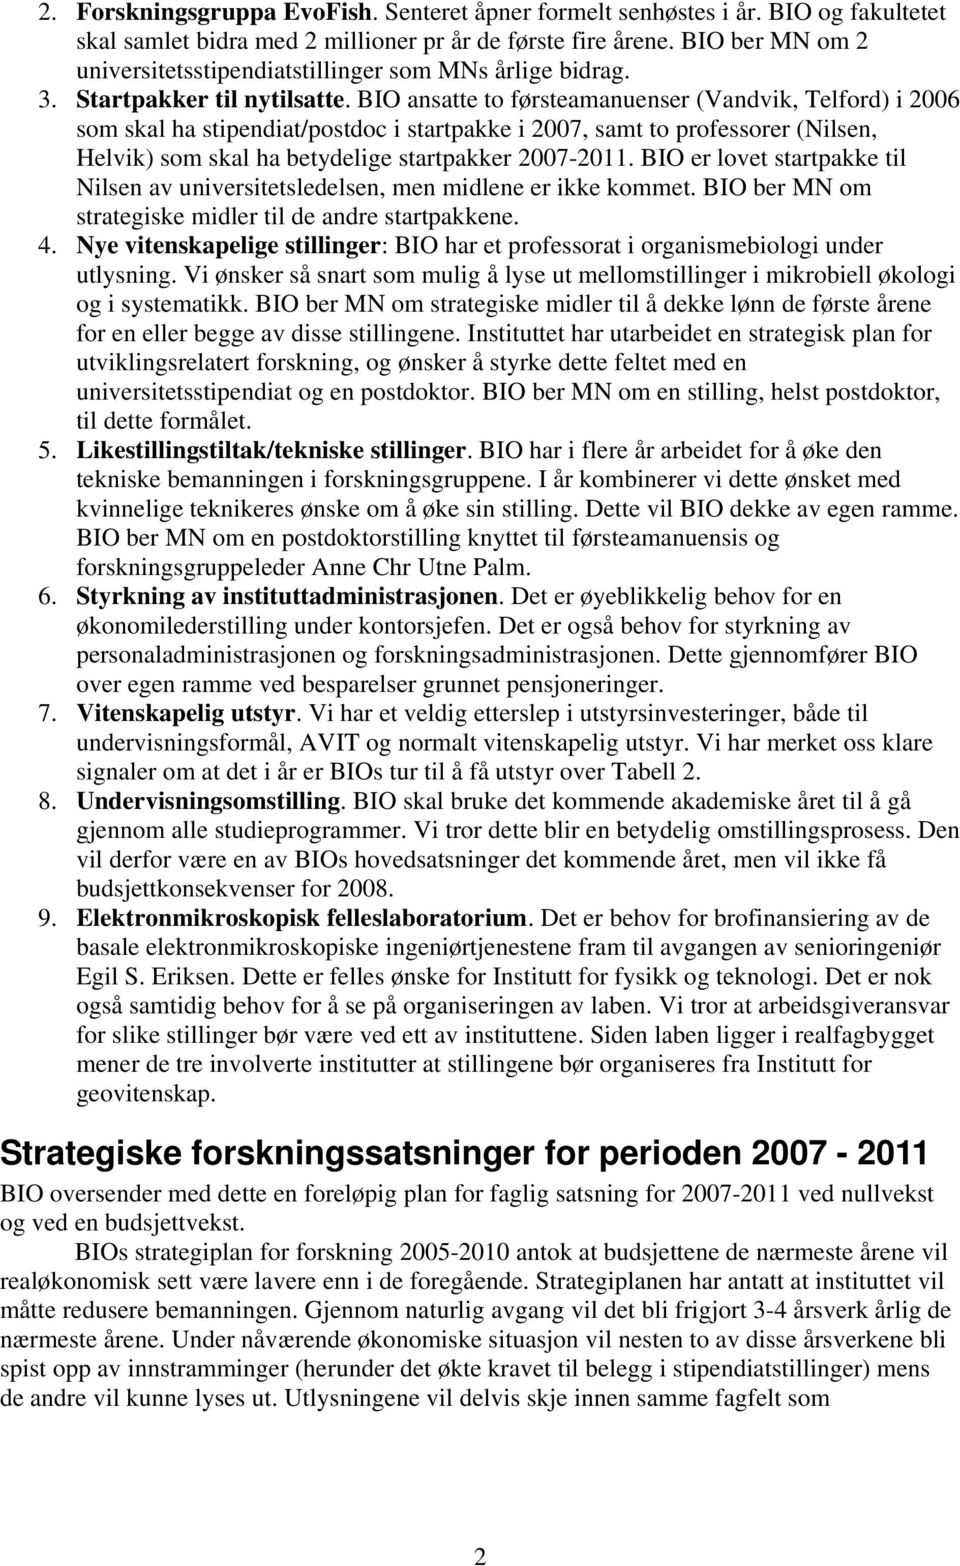 BIO ansatte to førsteamanuenser (Vandvik, Telford) i 2006 som skal ha stipendiat/postdoc i startpakke i 2007, samt to professorer (Nilsen, Helvik) som skal ha betydelige startpakker 2007-2011.